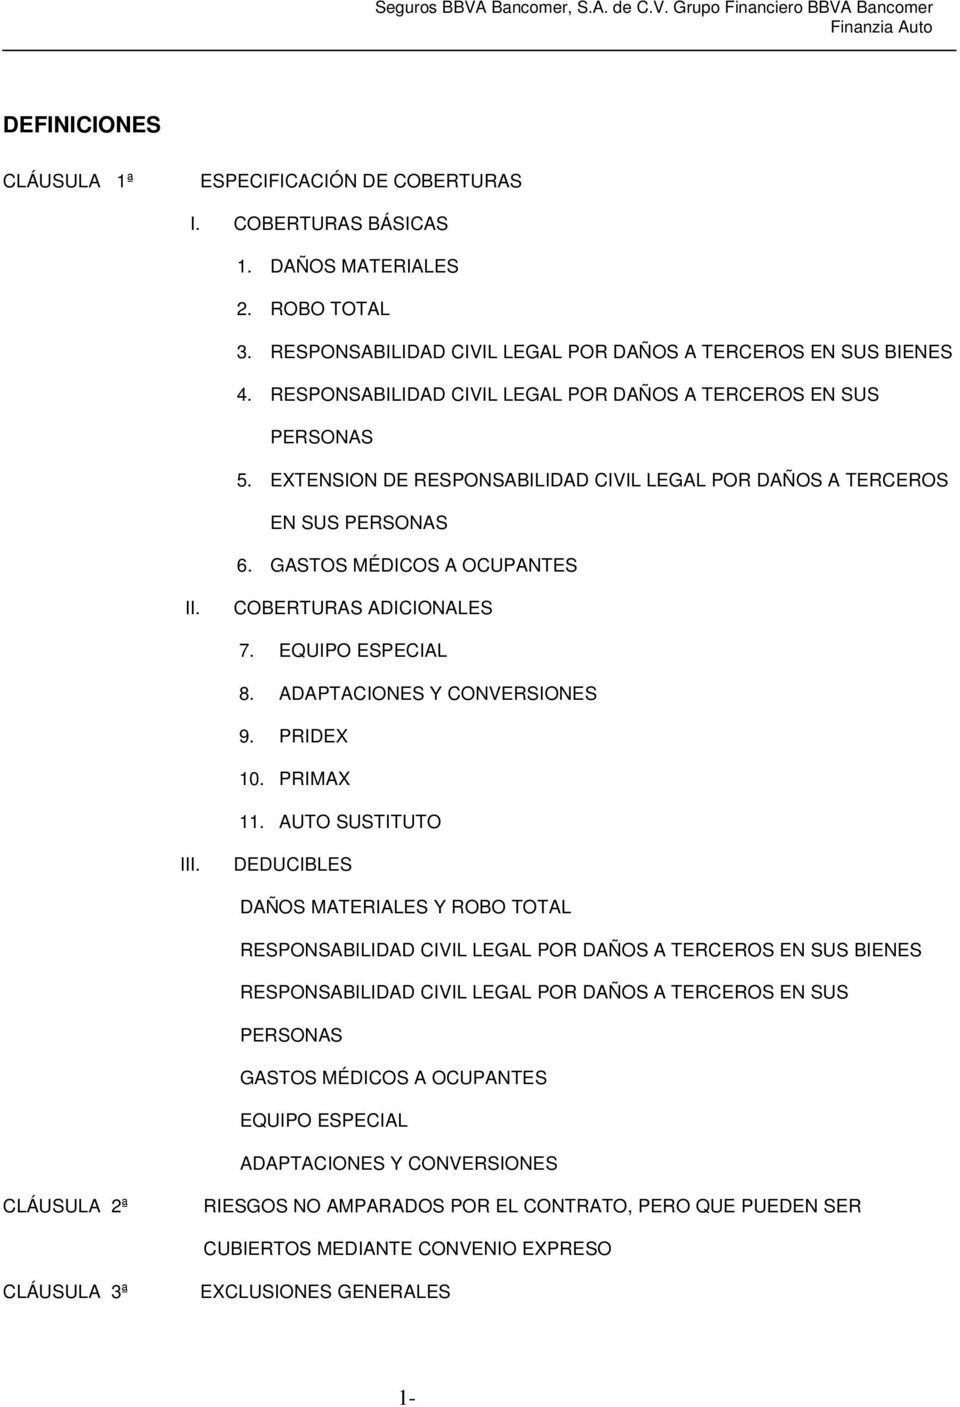 COBERTURAS ADICIONALES 7. EQUIPO ESPECIAL 8. ADAPTACIONES Y CONVERSIONES 9. PRIDEX 10. PRIMAX 11. AUTO SUSTITUTO III.